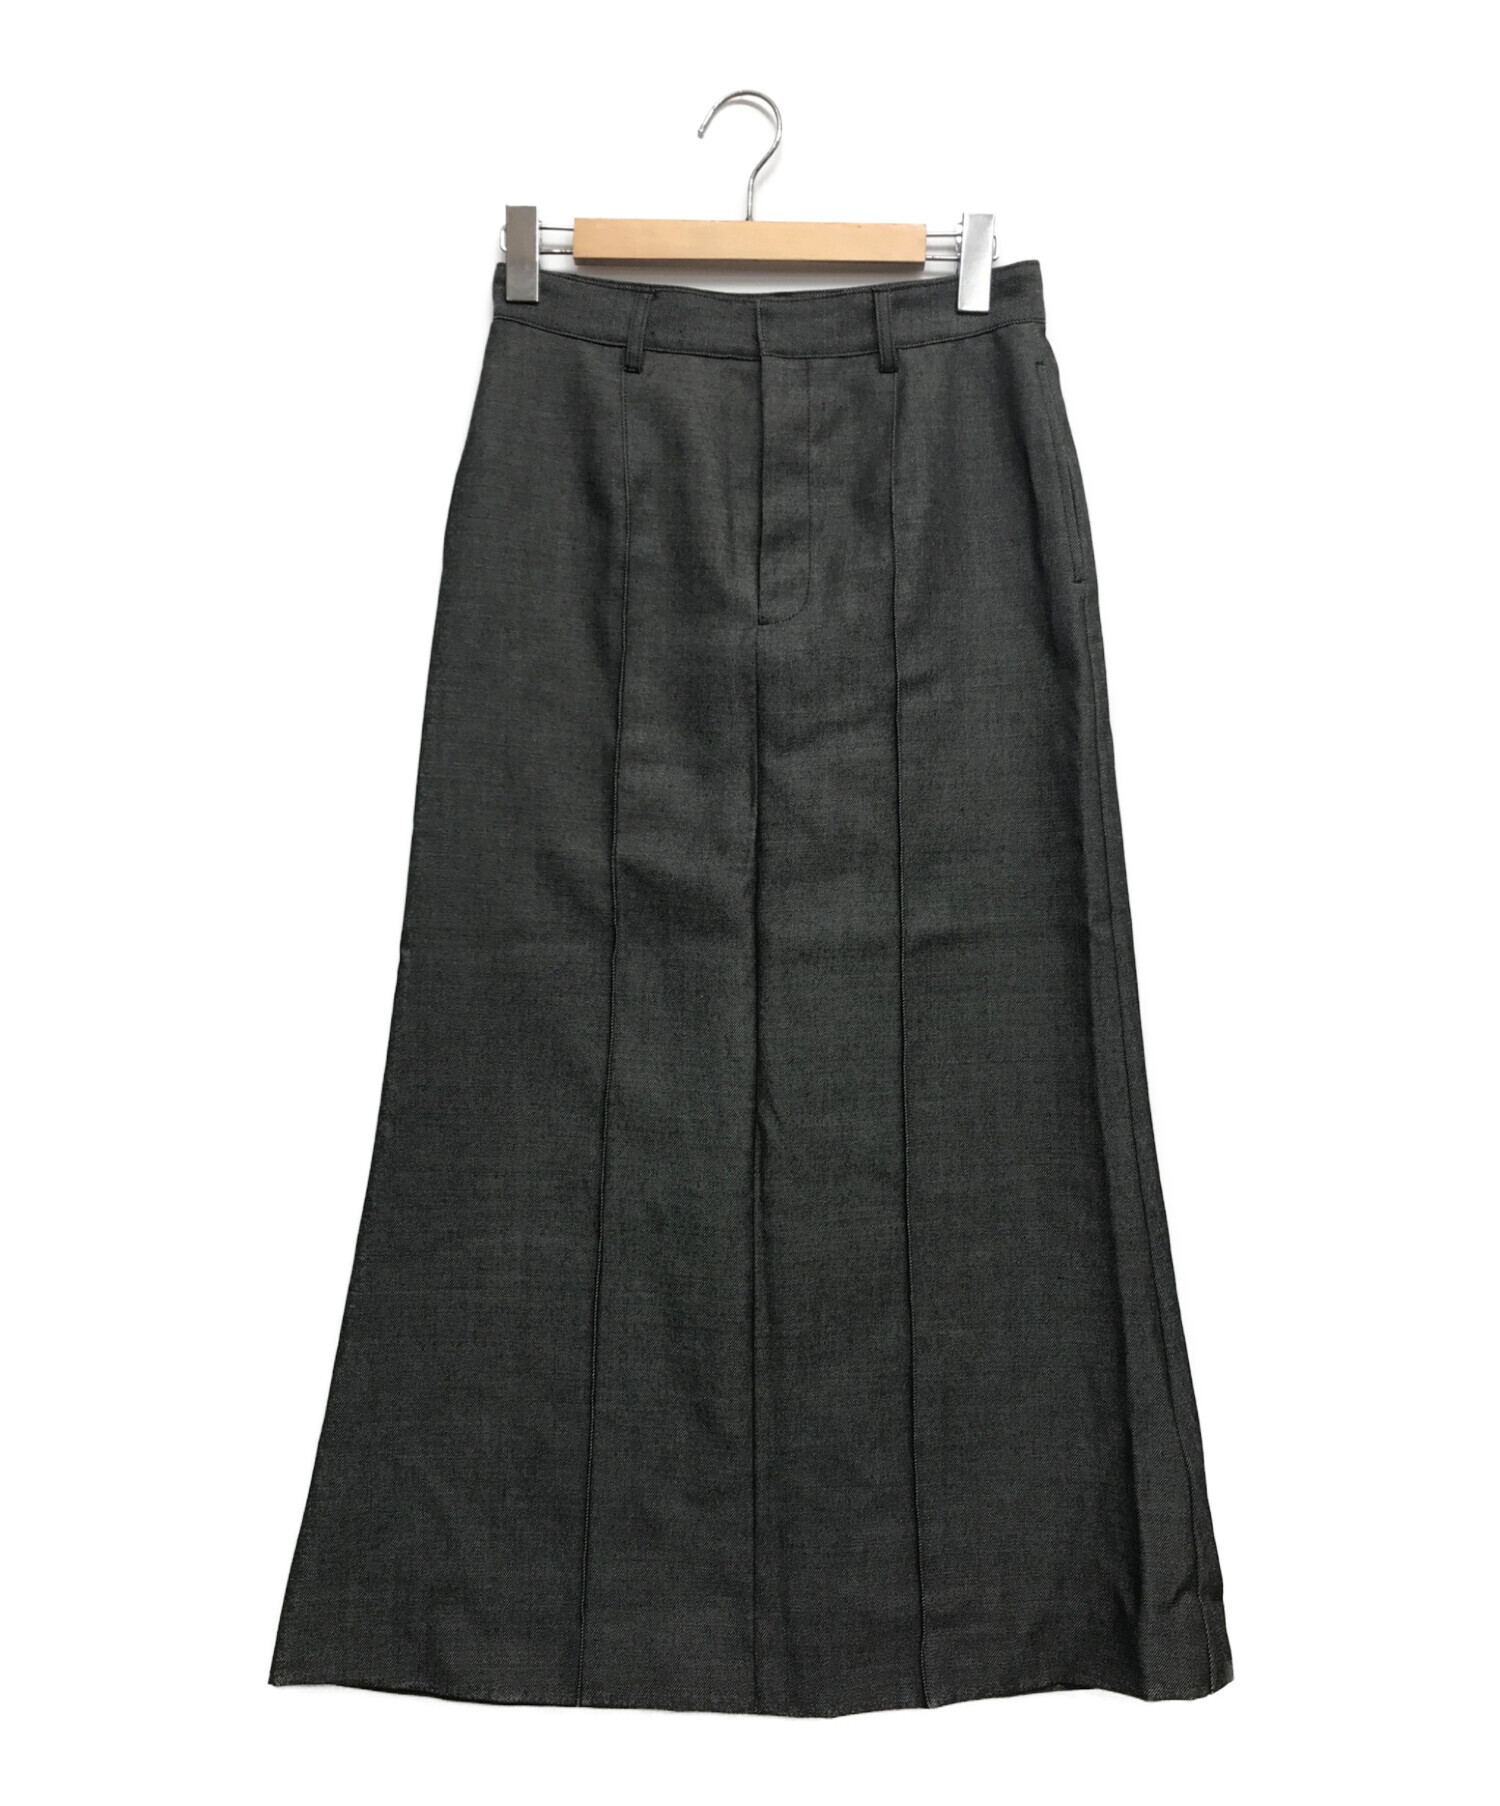 Noble スカート - ひざ丈スカート